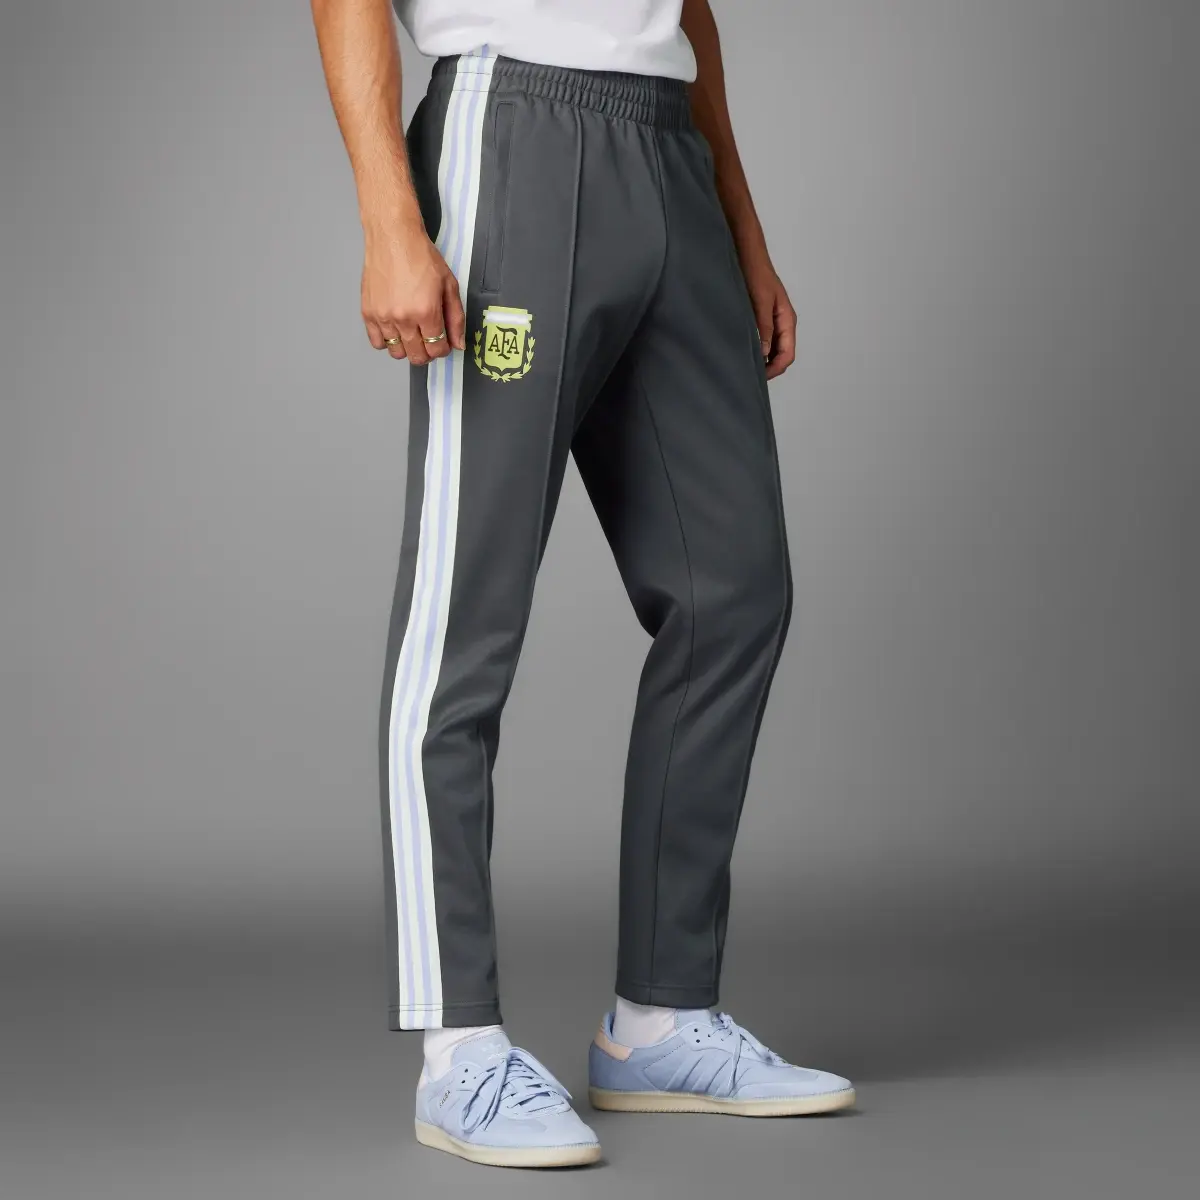 Adidas Argentina Pants. 1